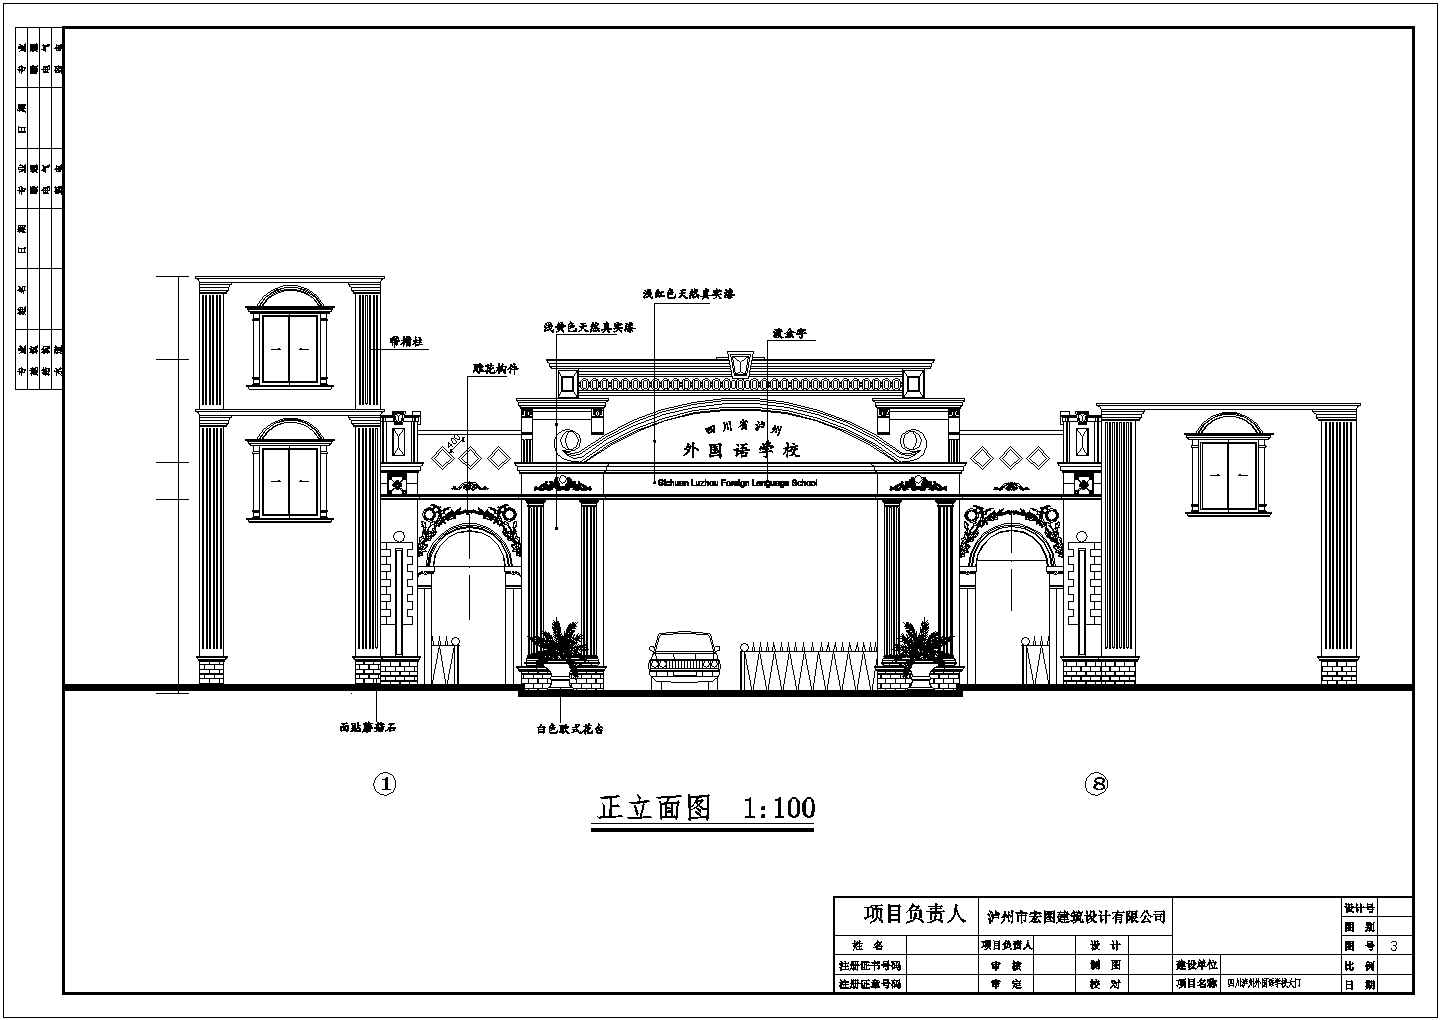 【四川】混合结构欧式学校大门建筑结构设计图